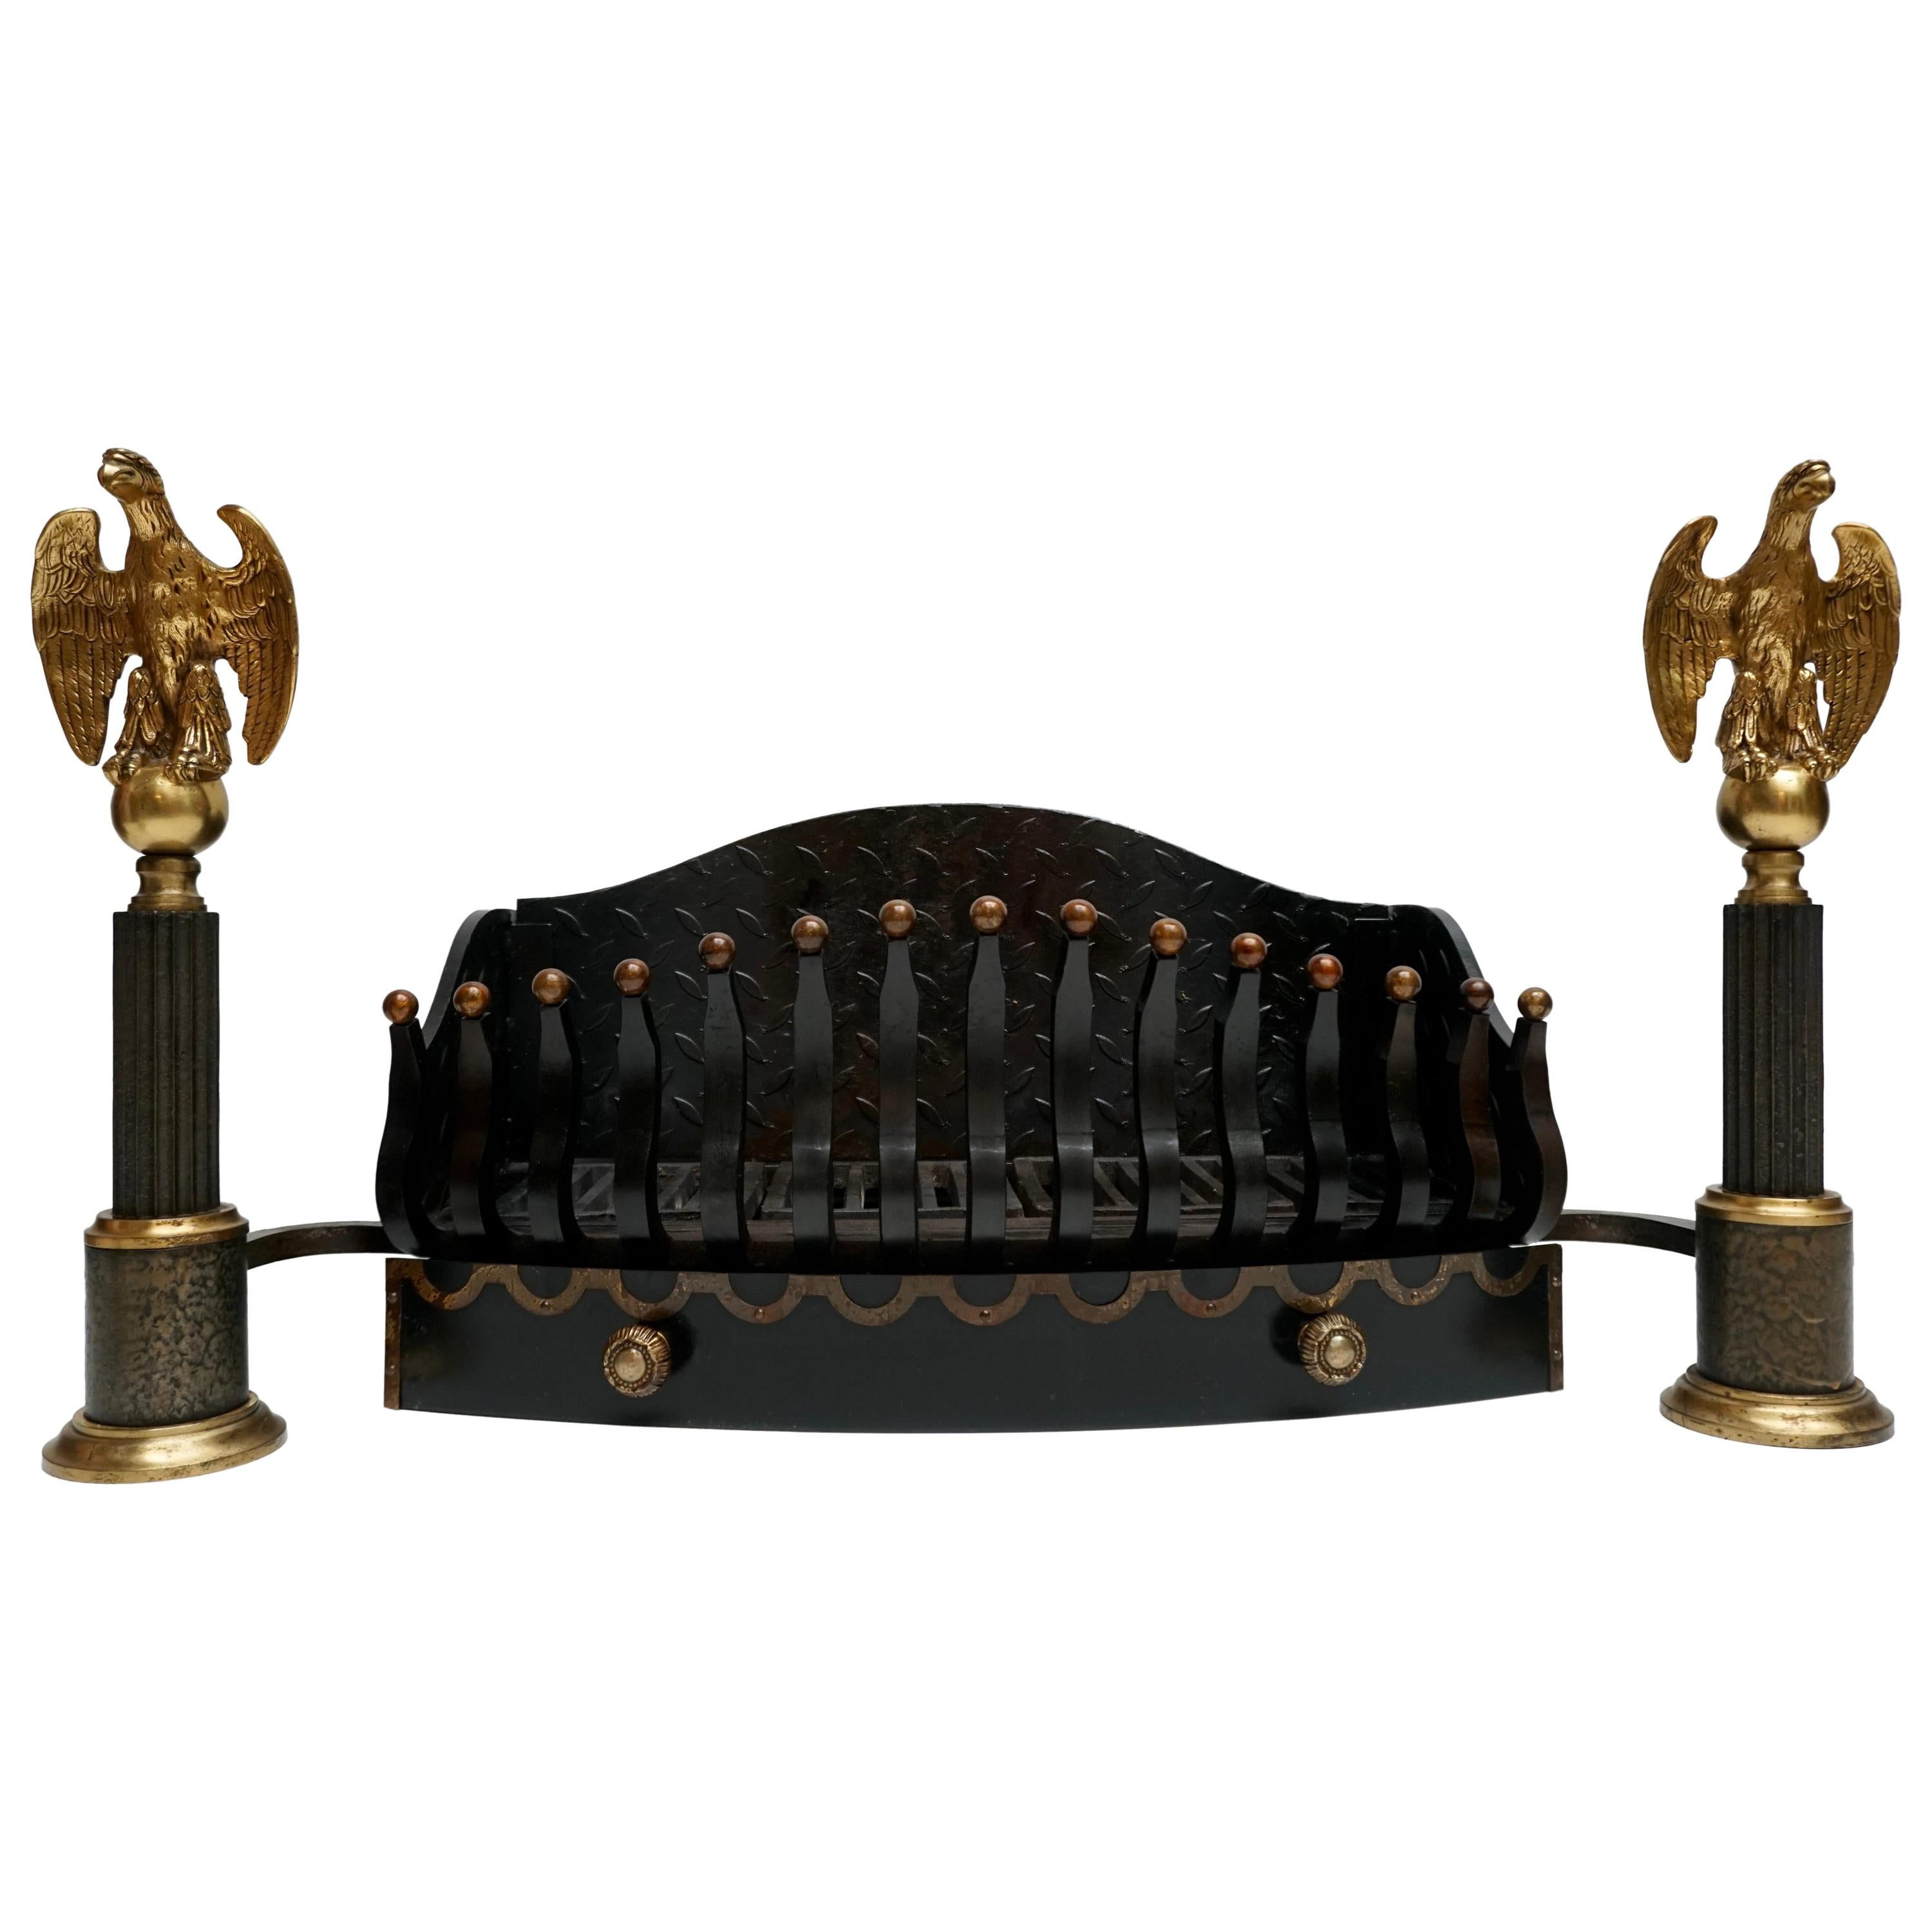 Monumentaler gusseiserner Feuerrostkorb aus dem späten 19. Jahrhundert mit Bronzeadlern